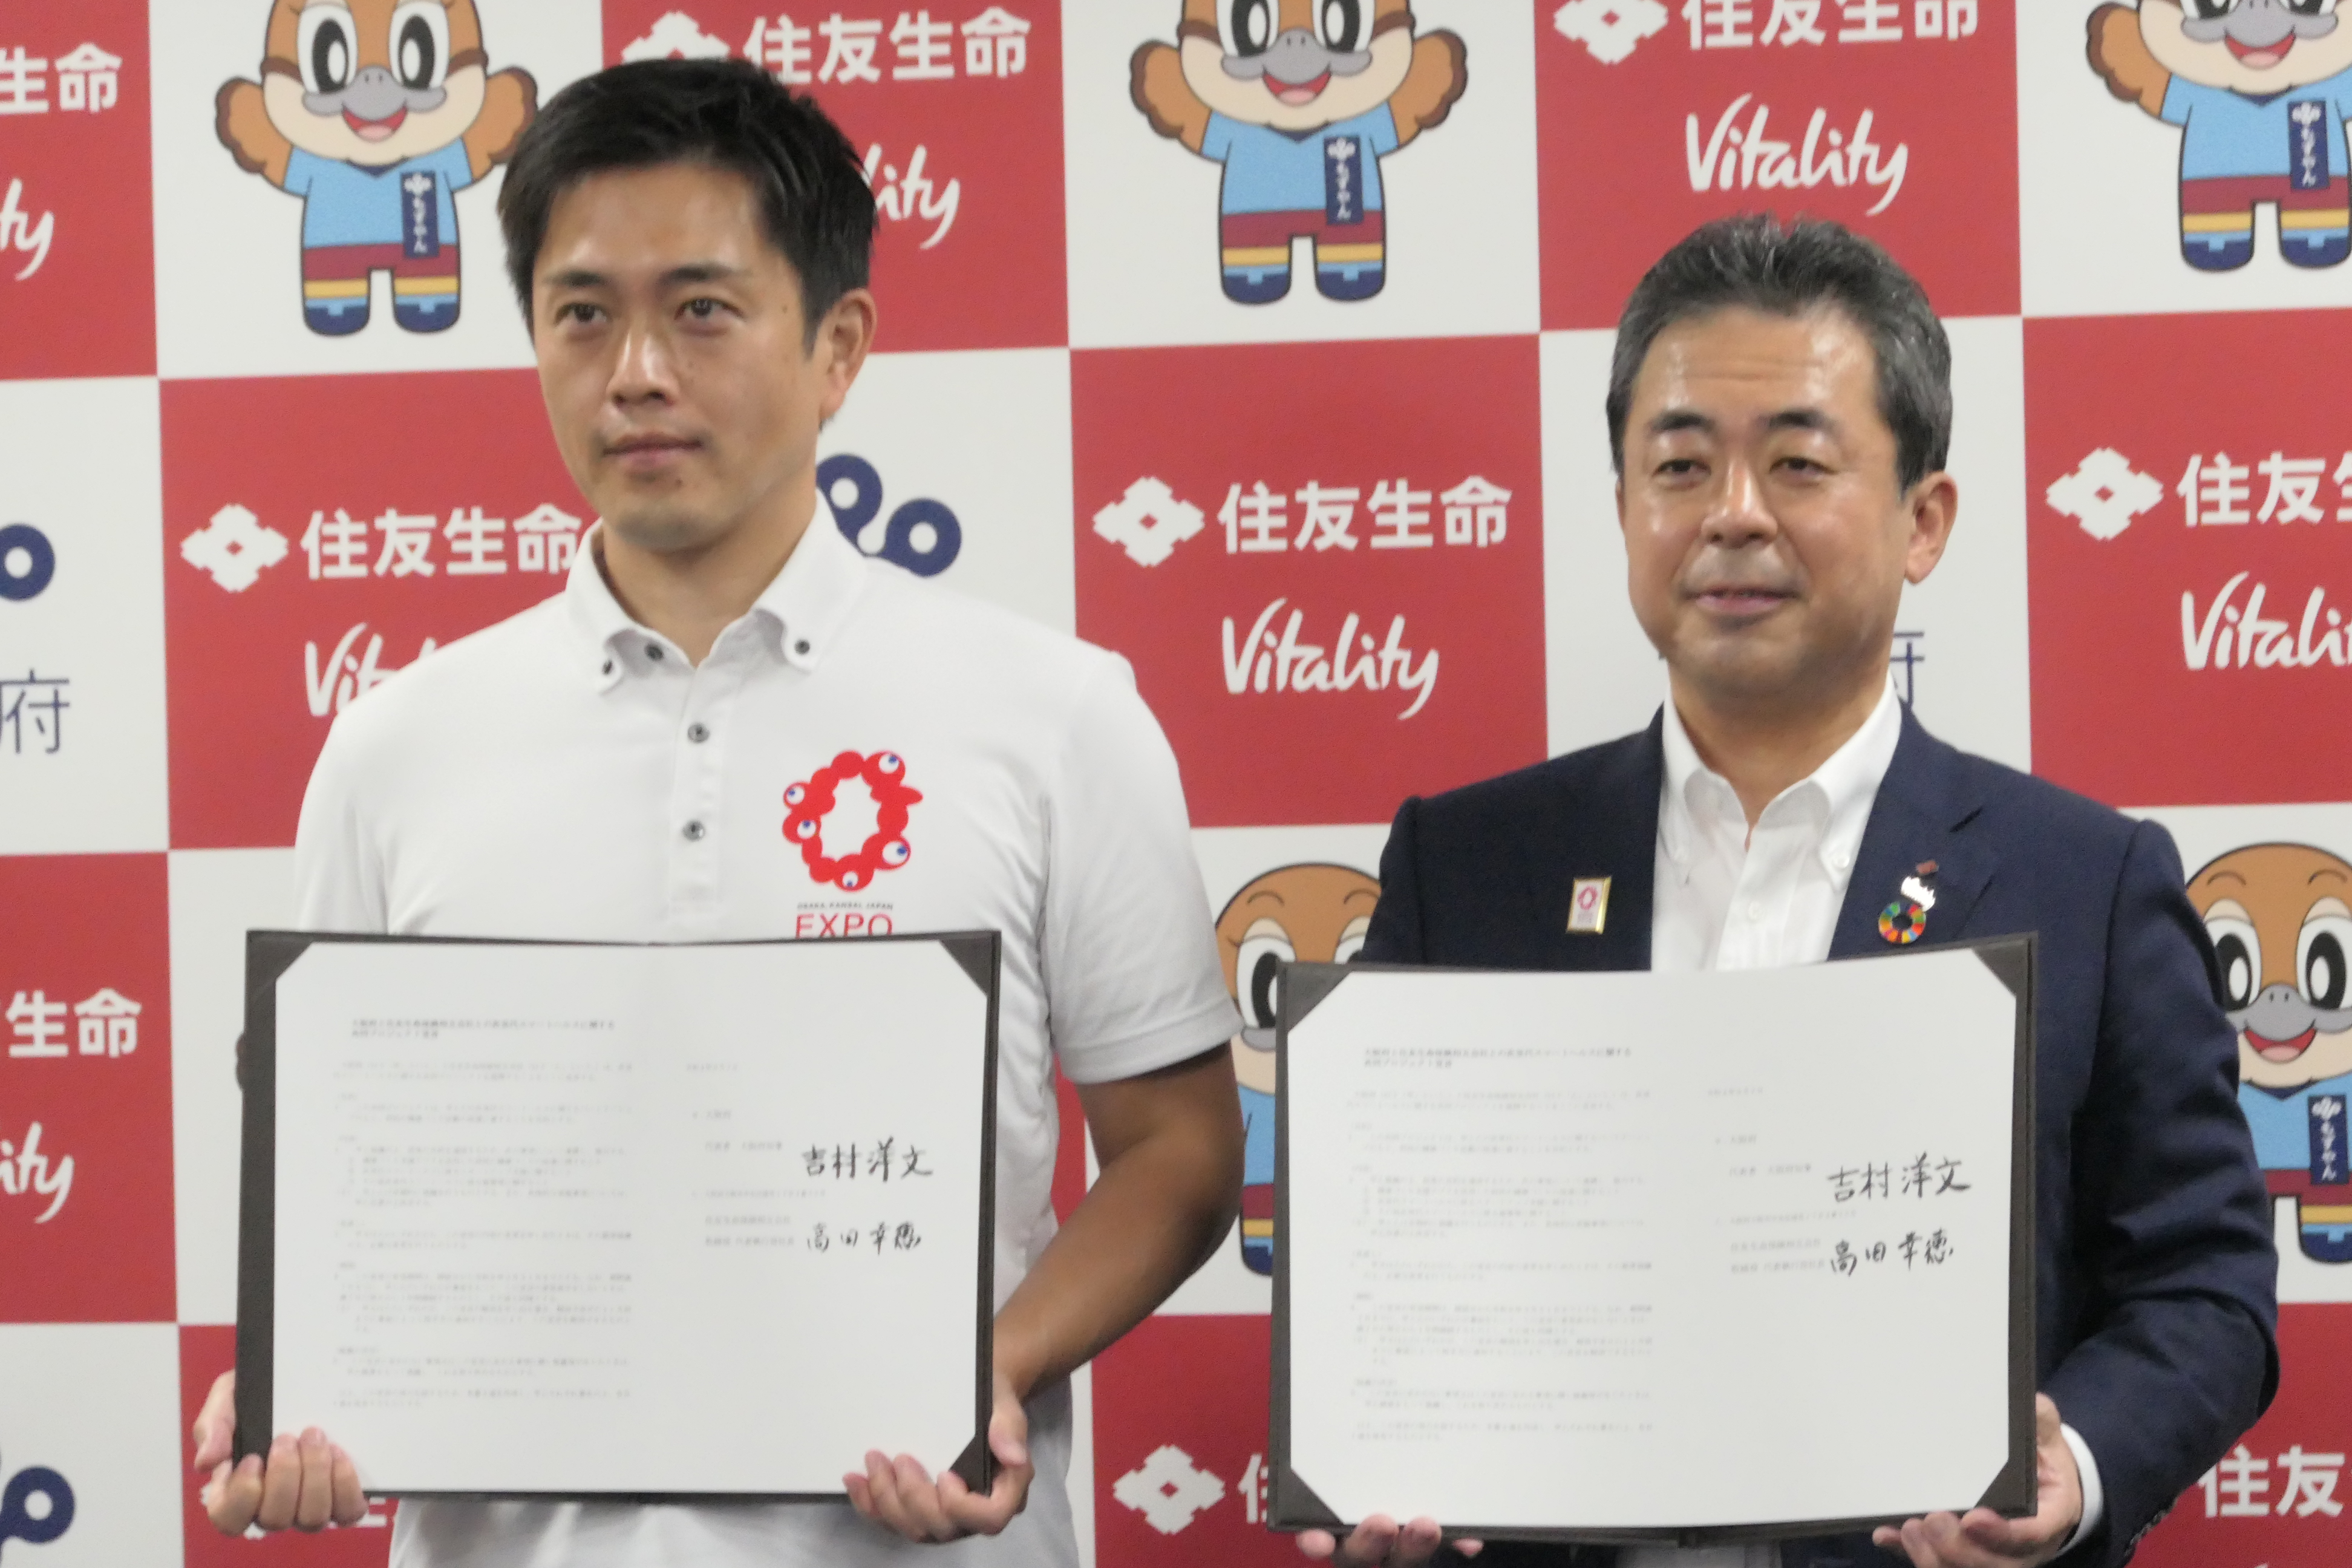 「次世代スマートヘルスに関する共同プロジェクト」の開始を宣言する大阪府の吉村洋文知事（左）と住友生命の高田幸徳社長。